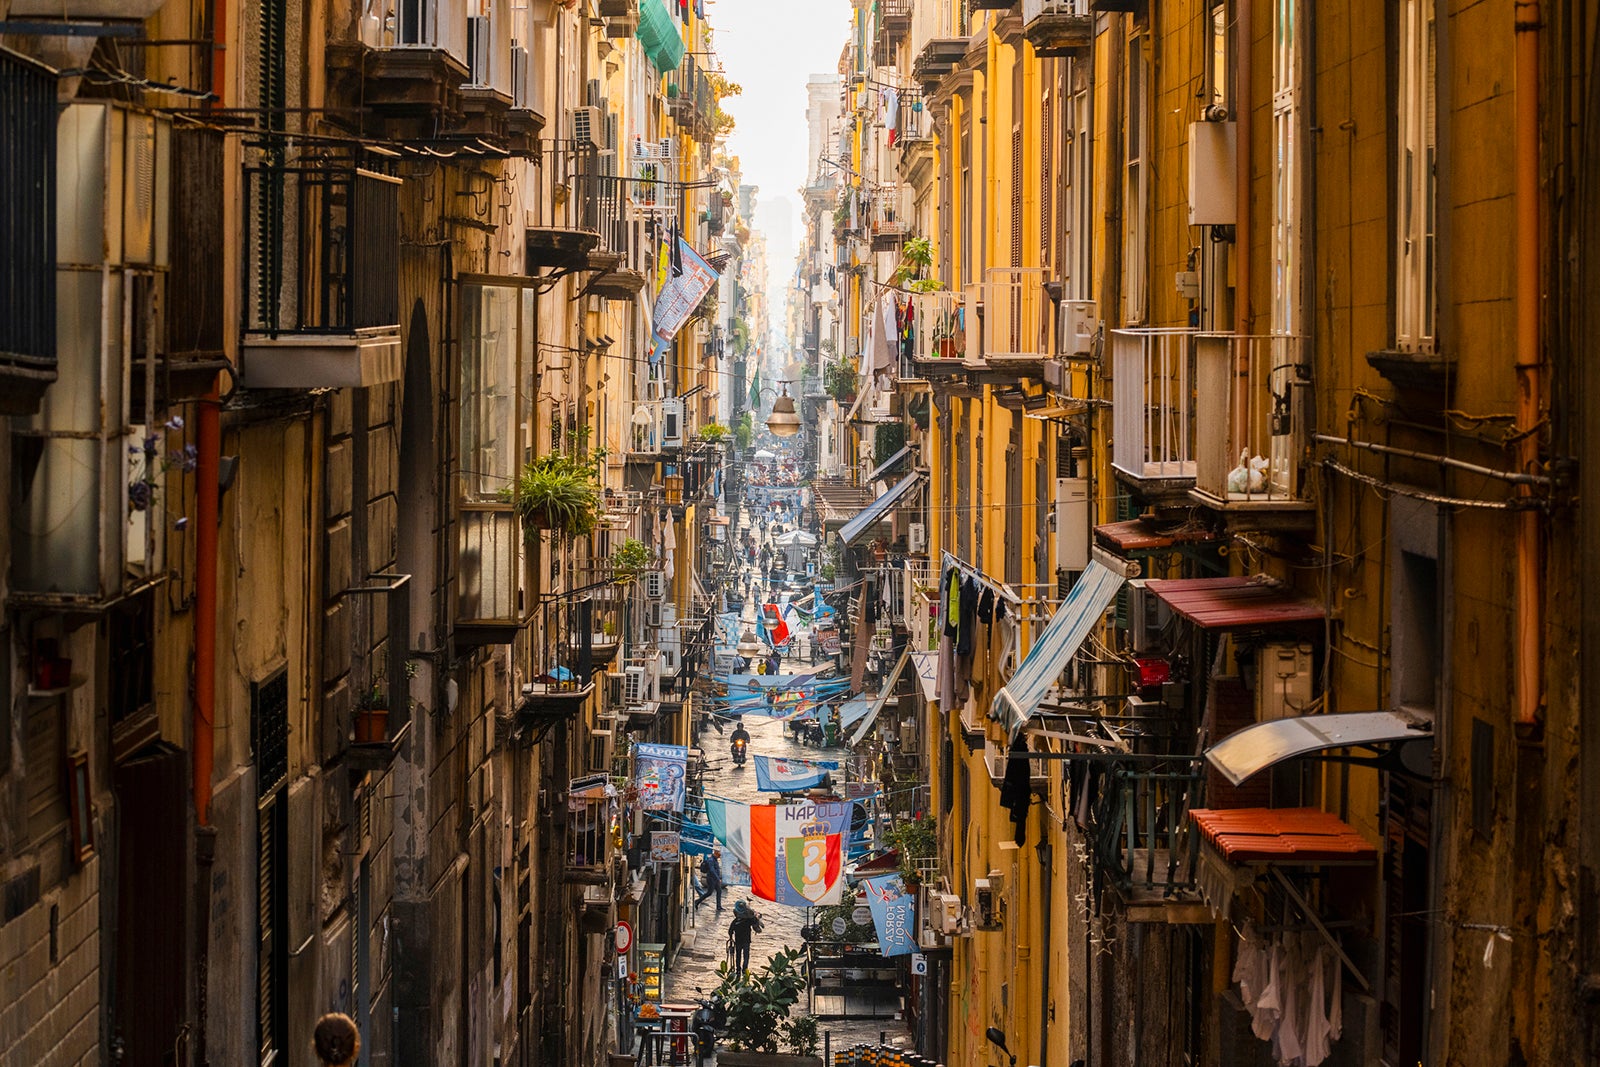 A narrow alleyway in Naples, Italy